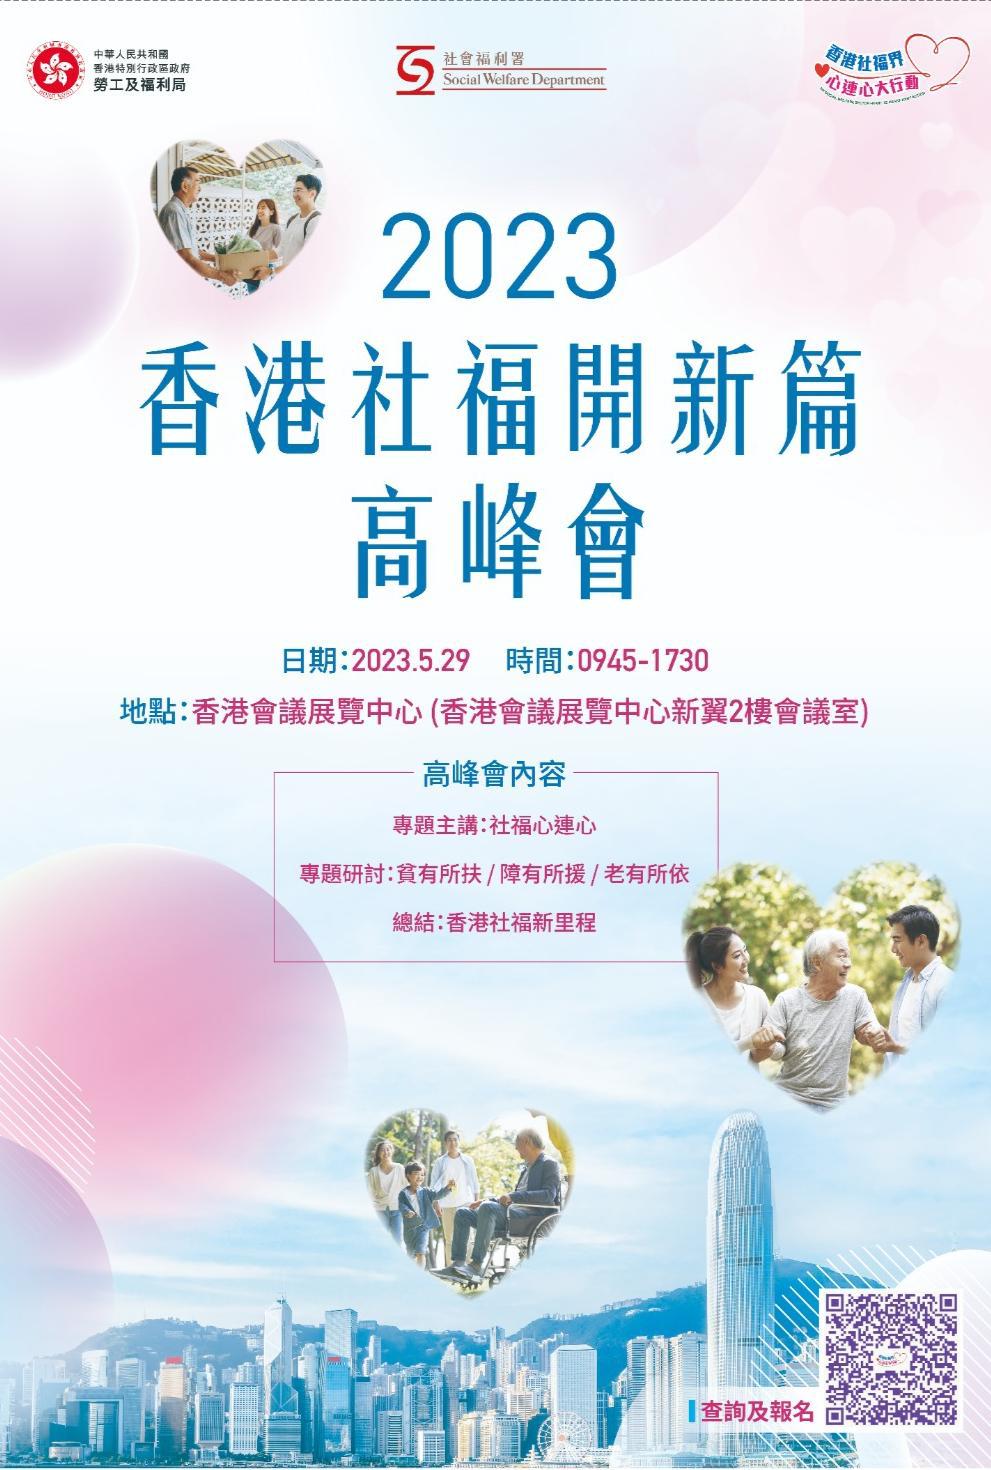 2023香港社福开新篇高峰会将于下周一(29日)举行。香港社福界心连心大行动FB图片